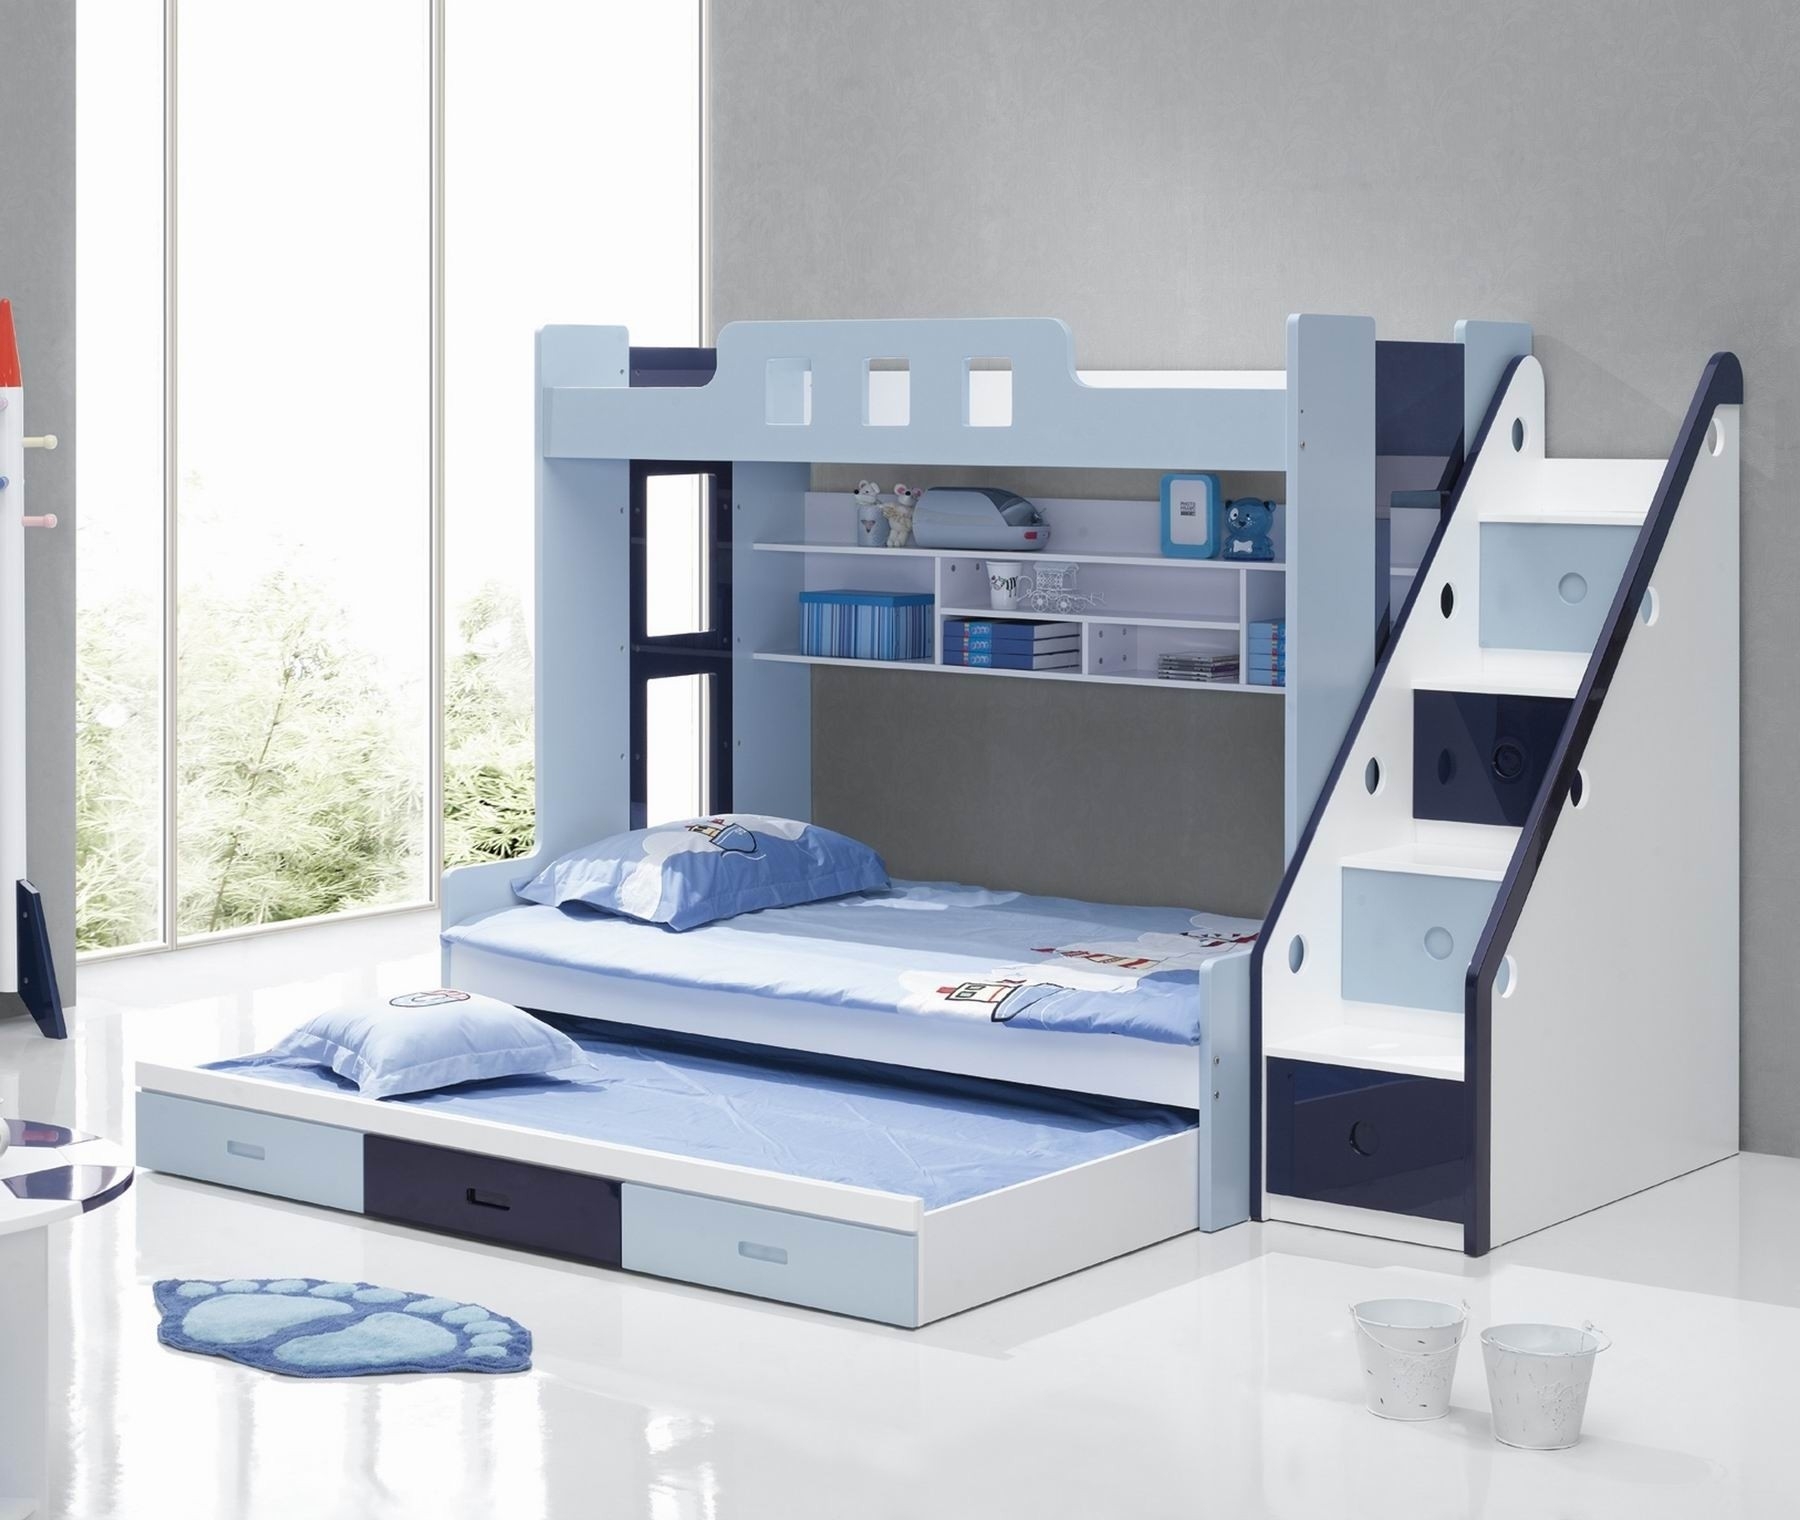 furniture city bunk beds